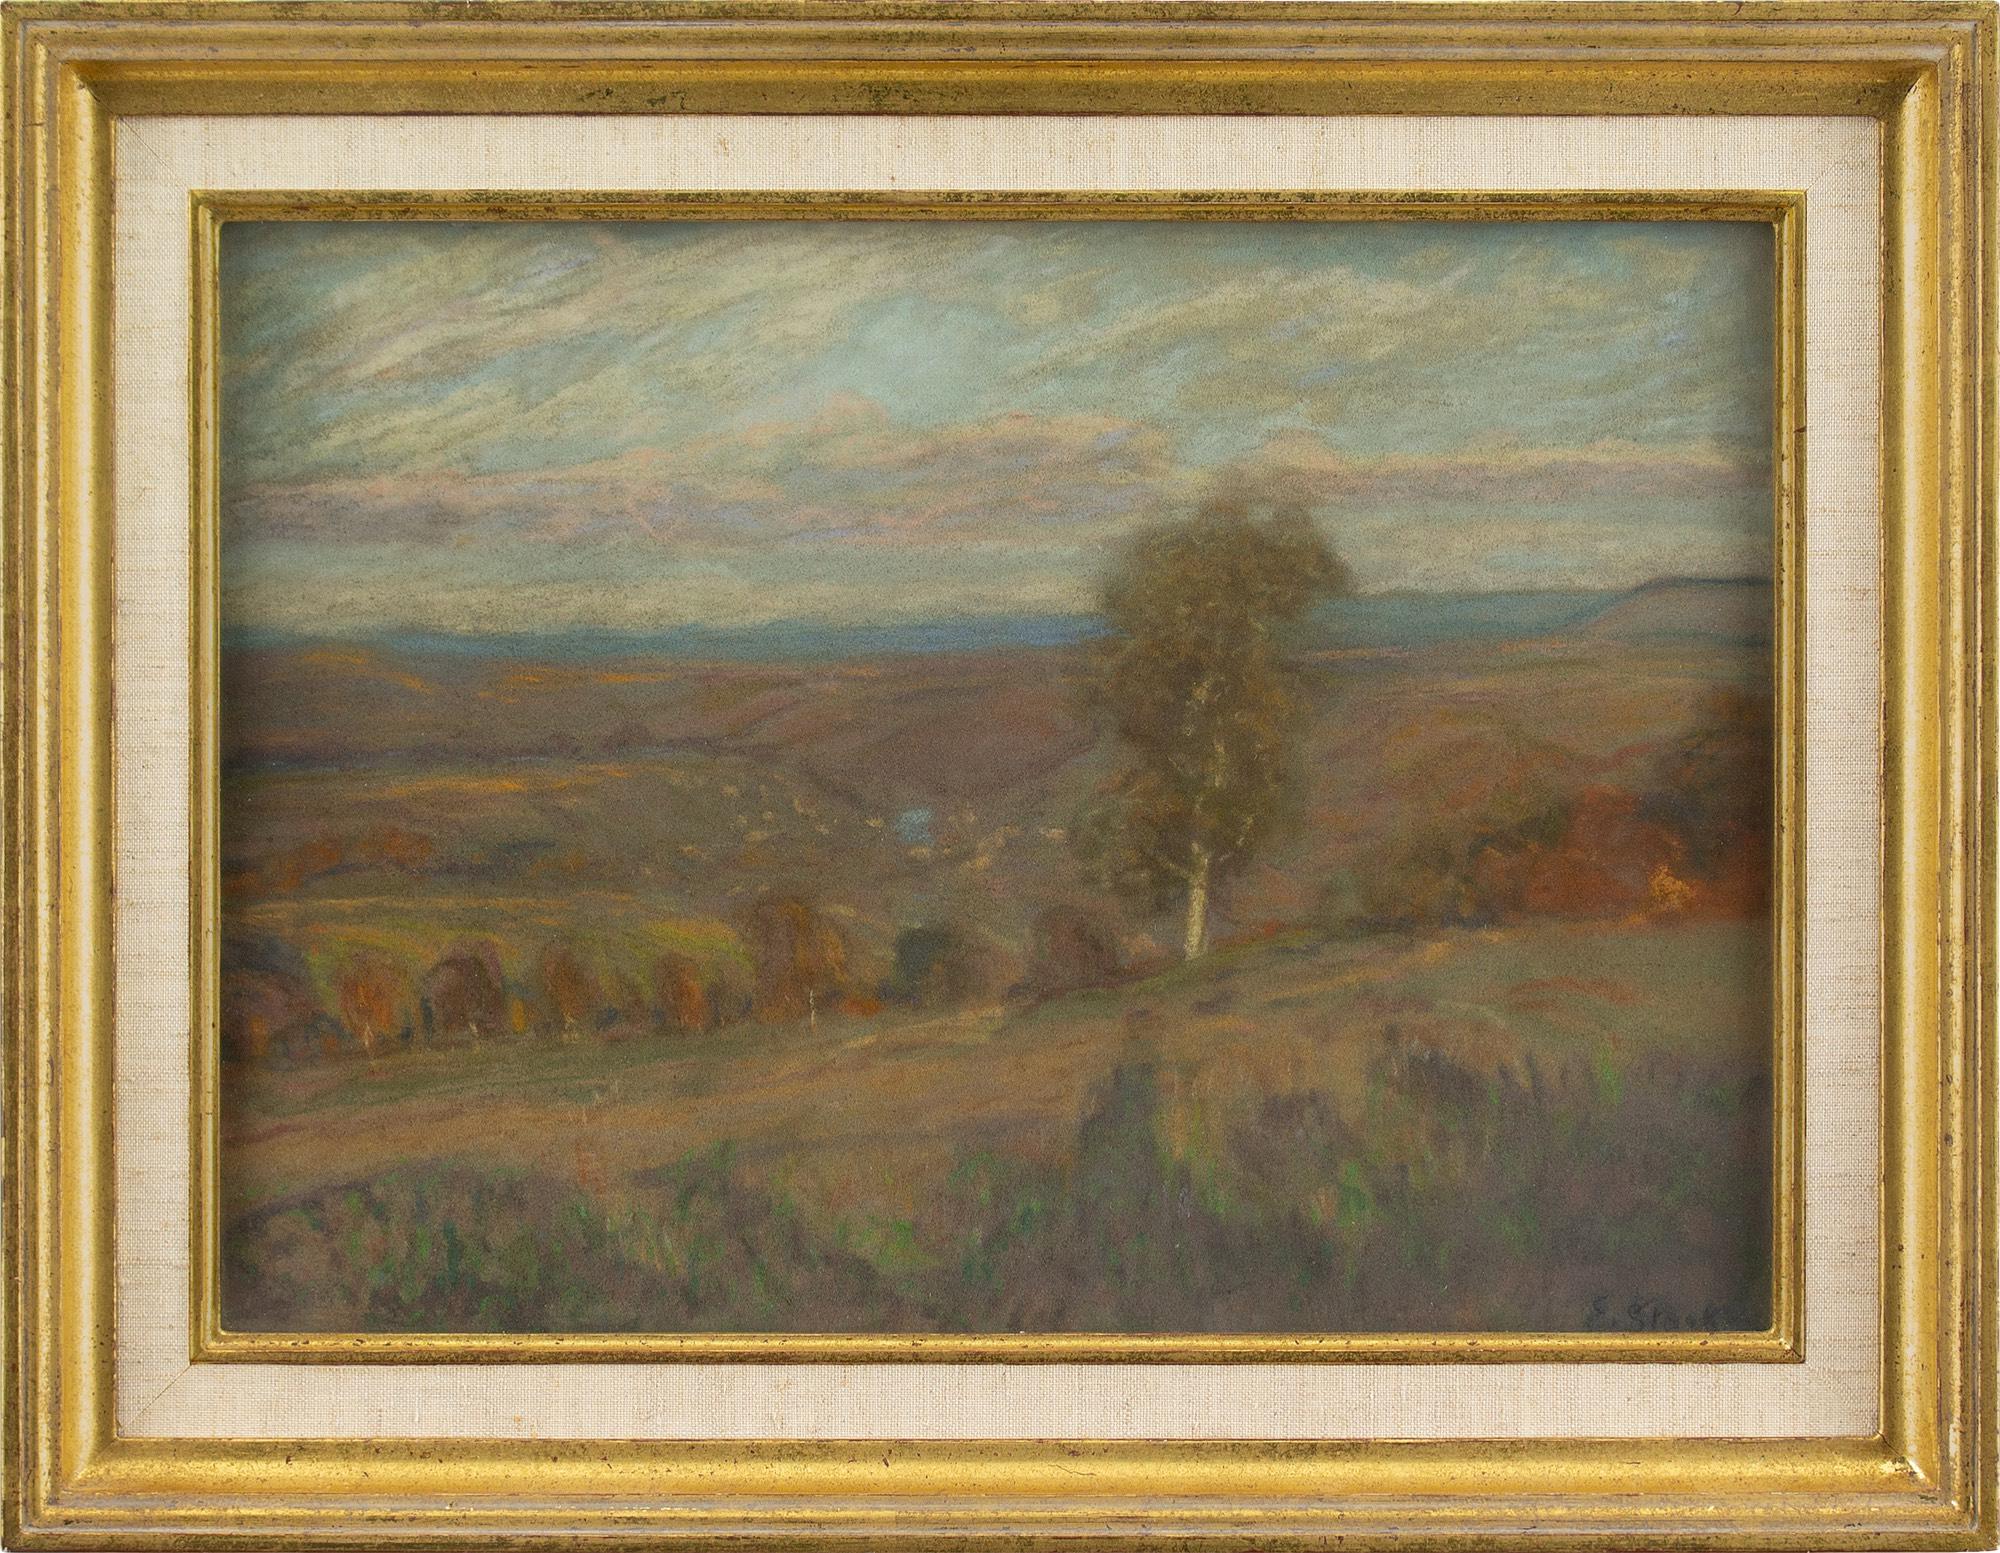 Ce pastel évocateur du début du XXe siècle de l'artiste allemand Erwin Starker (1872-1938) capture une vue vallonnée dans la vallée du Neckar, près de Stuttgart. Une impressionnante palette de couleurs ondule sur les collines automnales et se